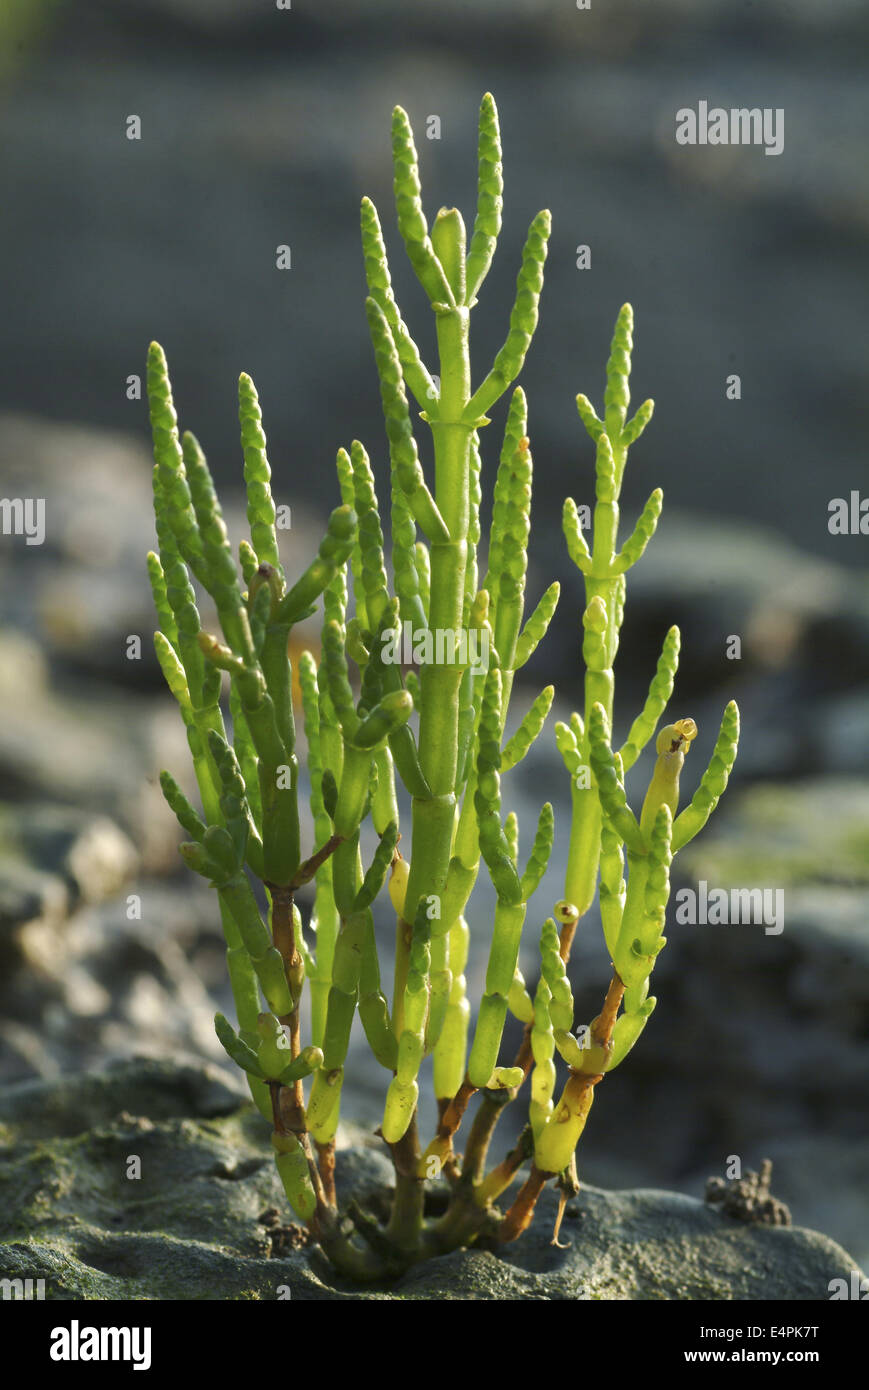 glasswort, salicornia europaea Stock Photo